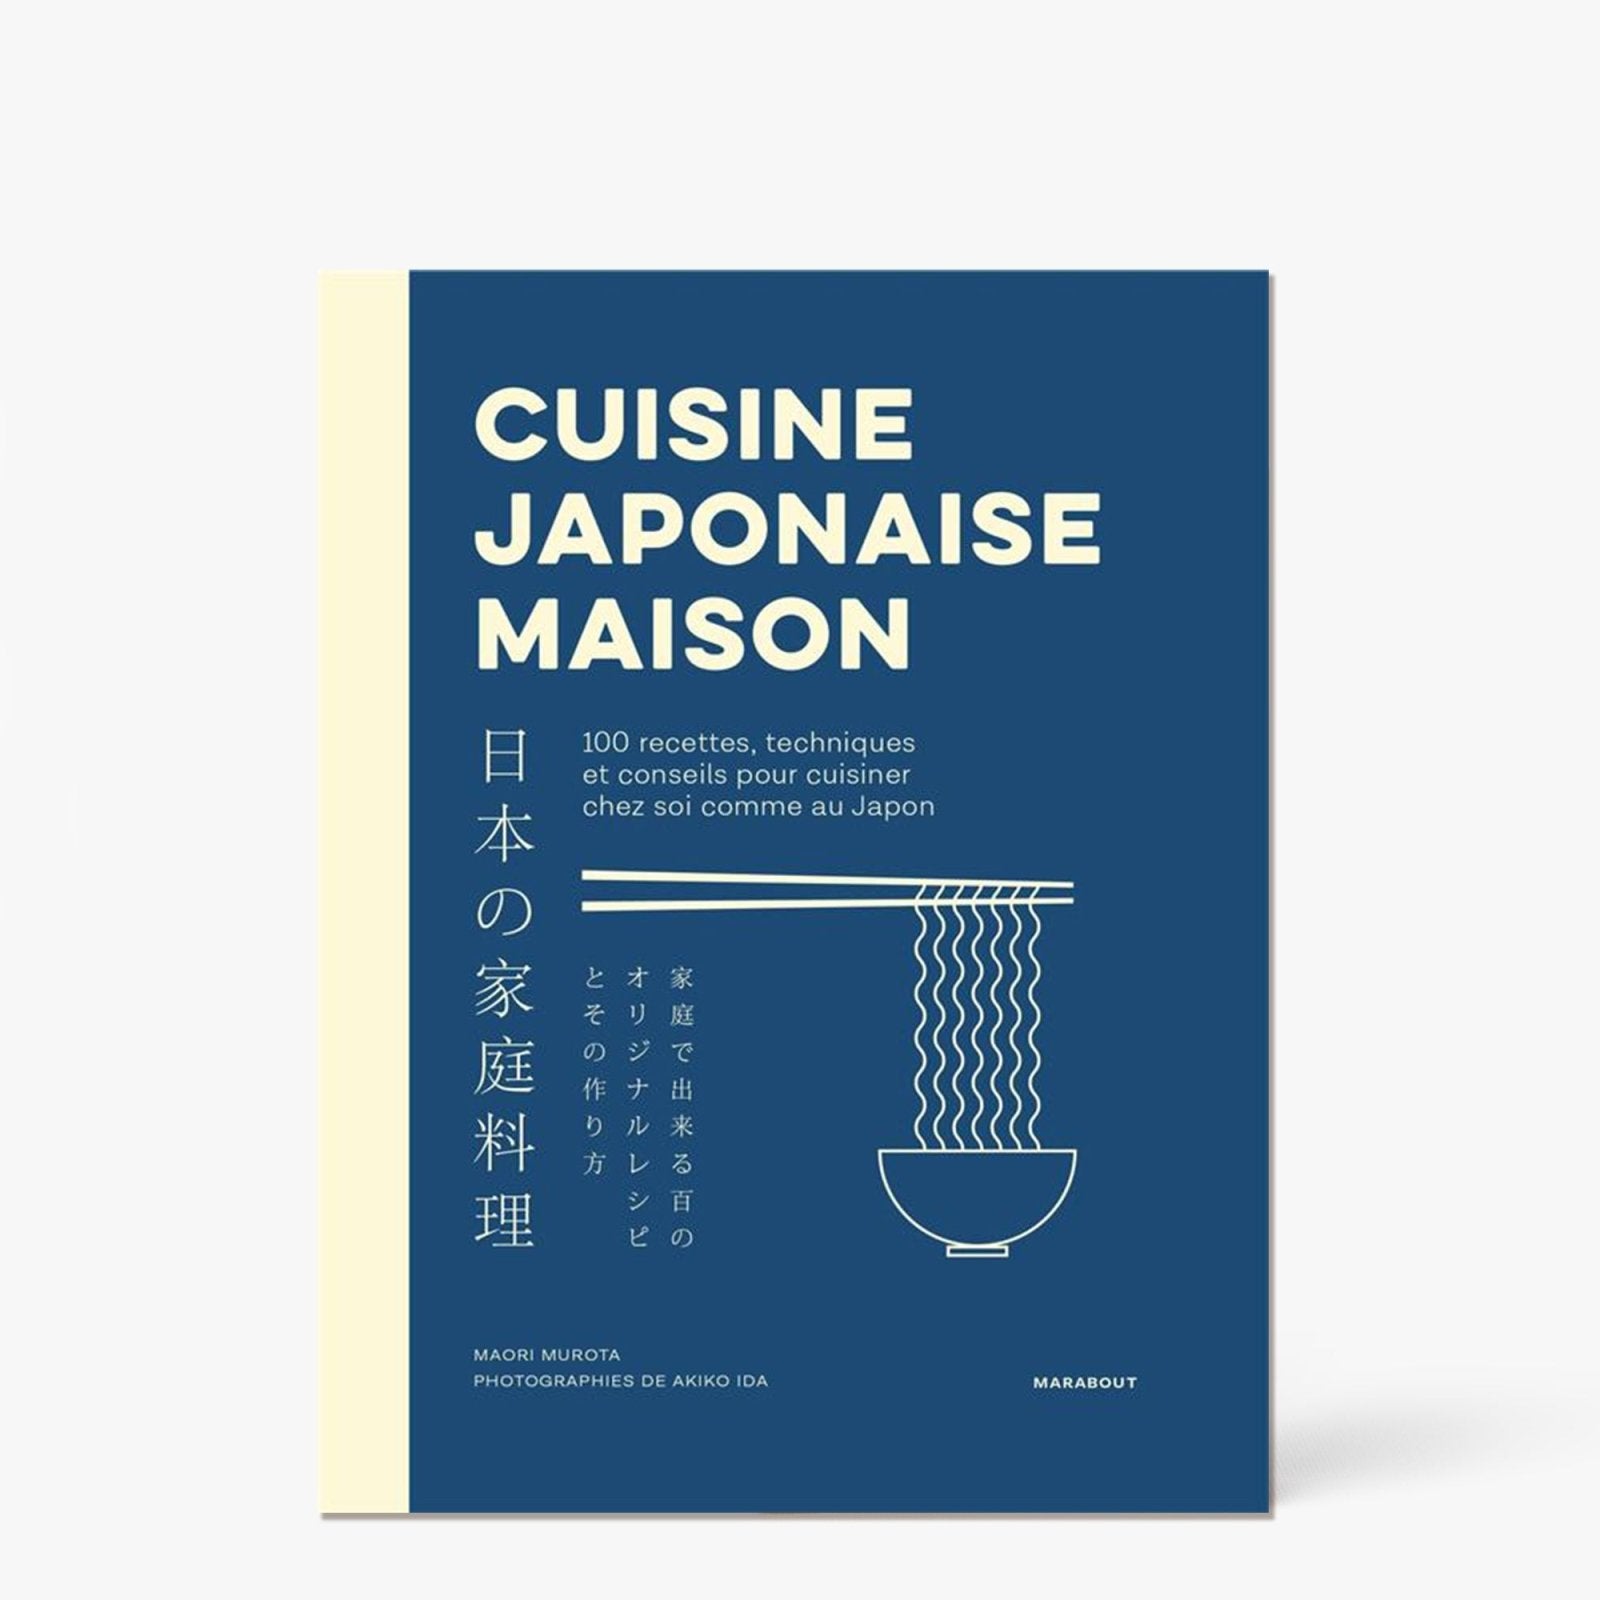 Cuisine japonaise maison. 100 recettes, techniques et conseils pour cuisiner chez soi comme au Japon - Marabout - iRASSHAi